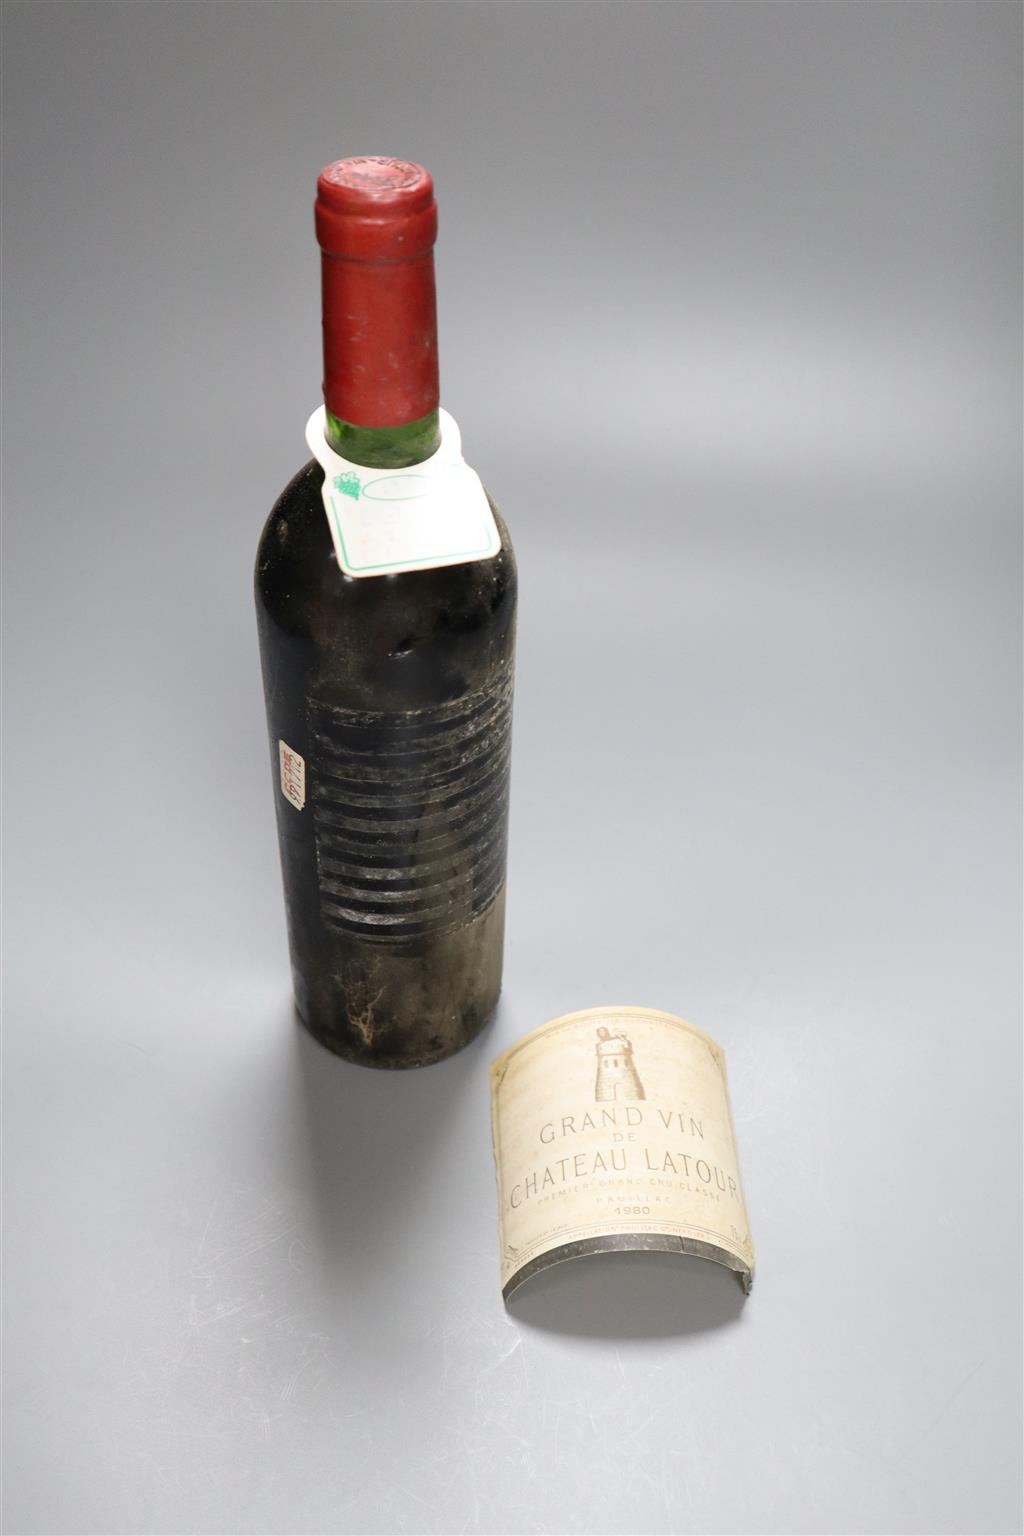 A bottle of Chateau Latour 1980, label detached